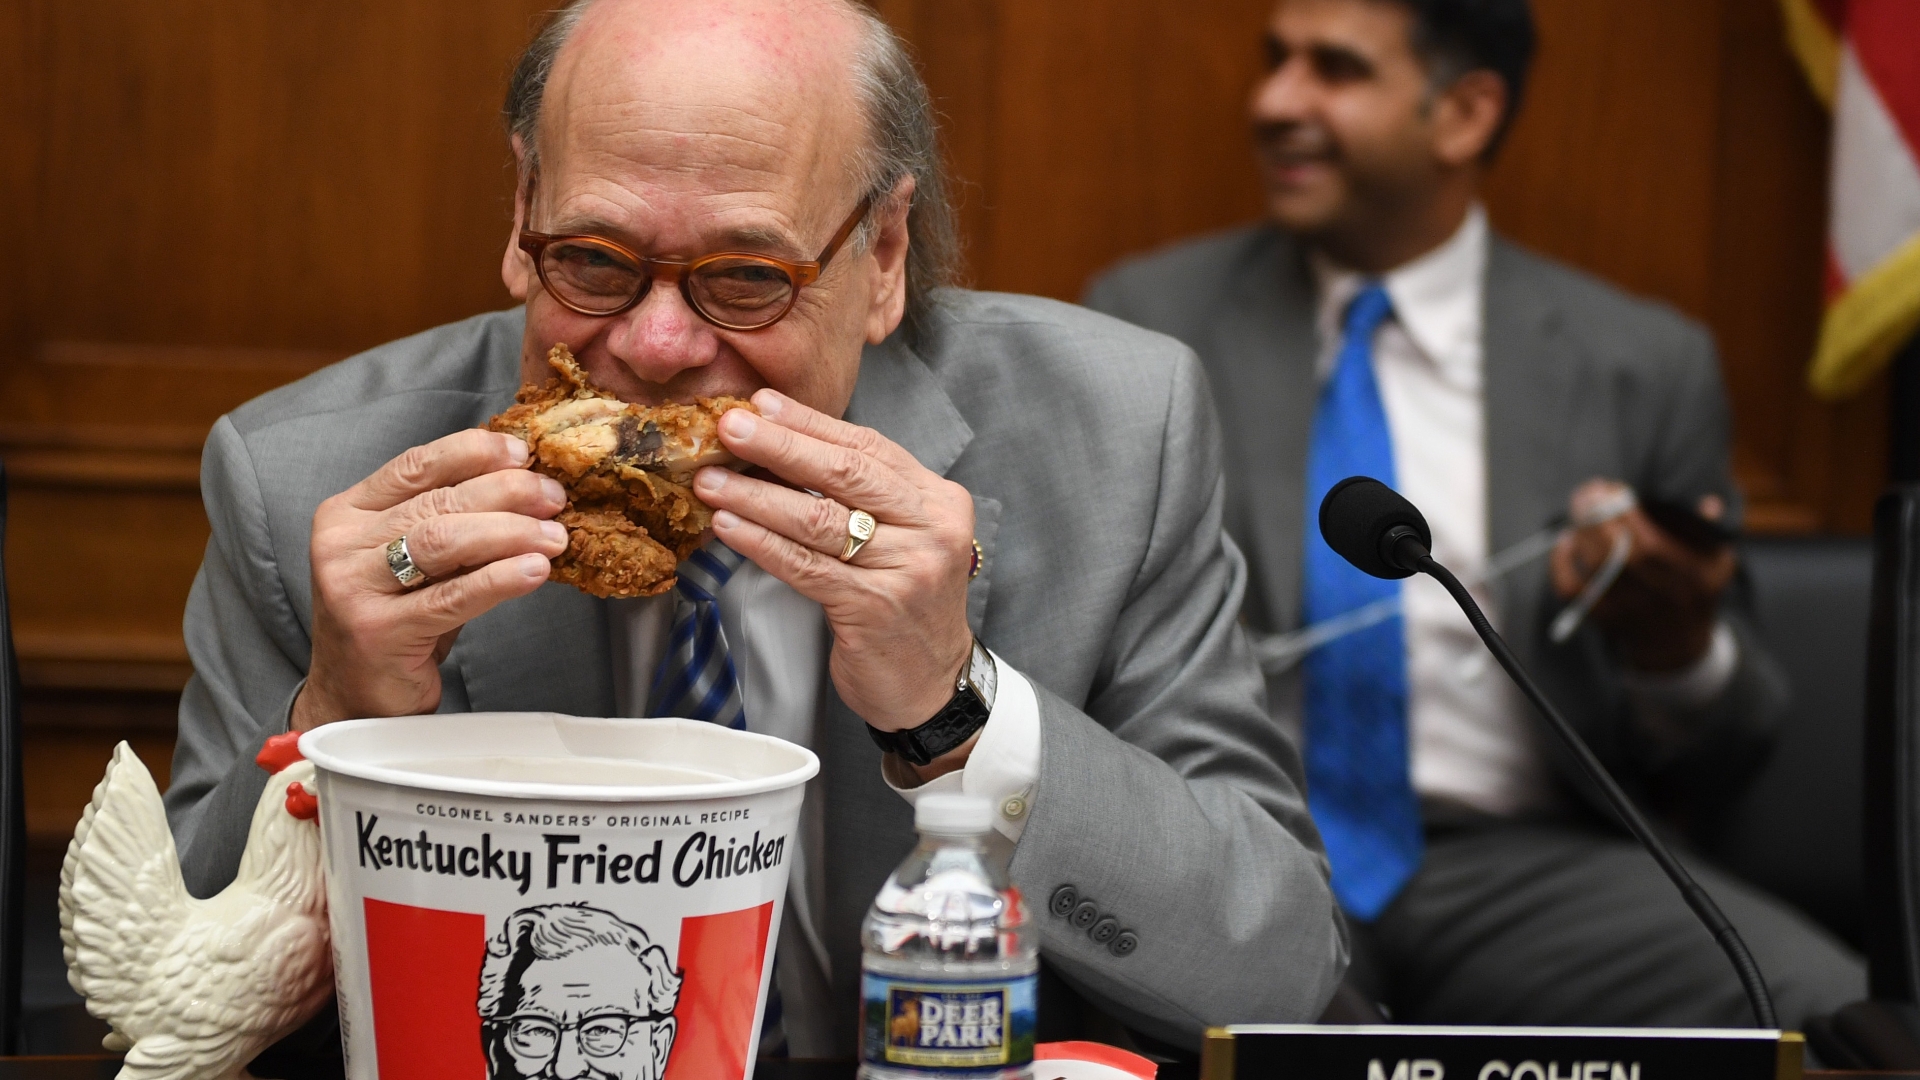 Steve Cohen eats Kentucky Fried Chicken at Barr hearing